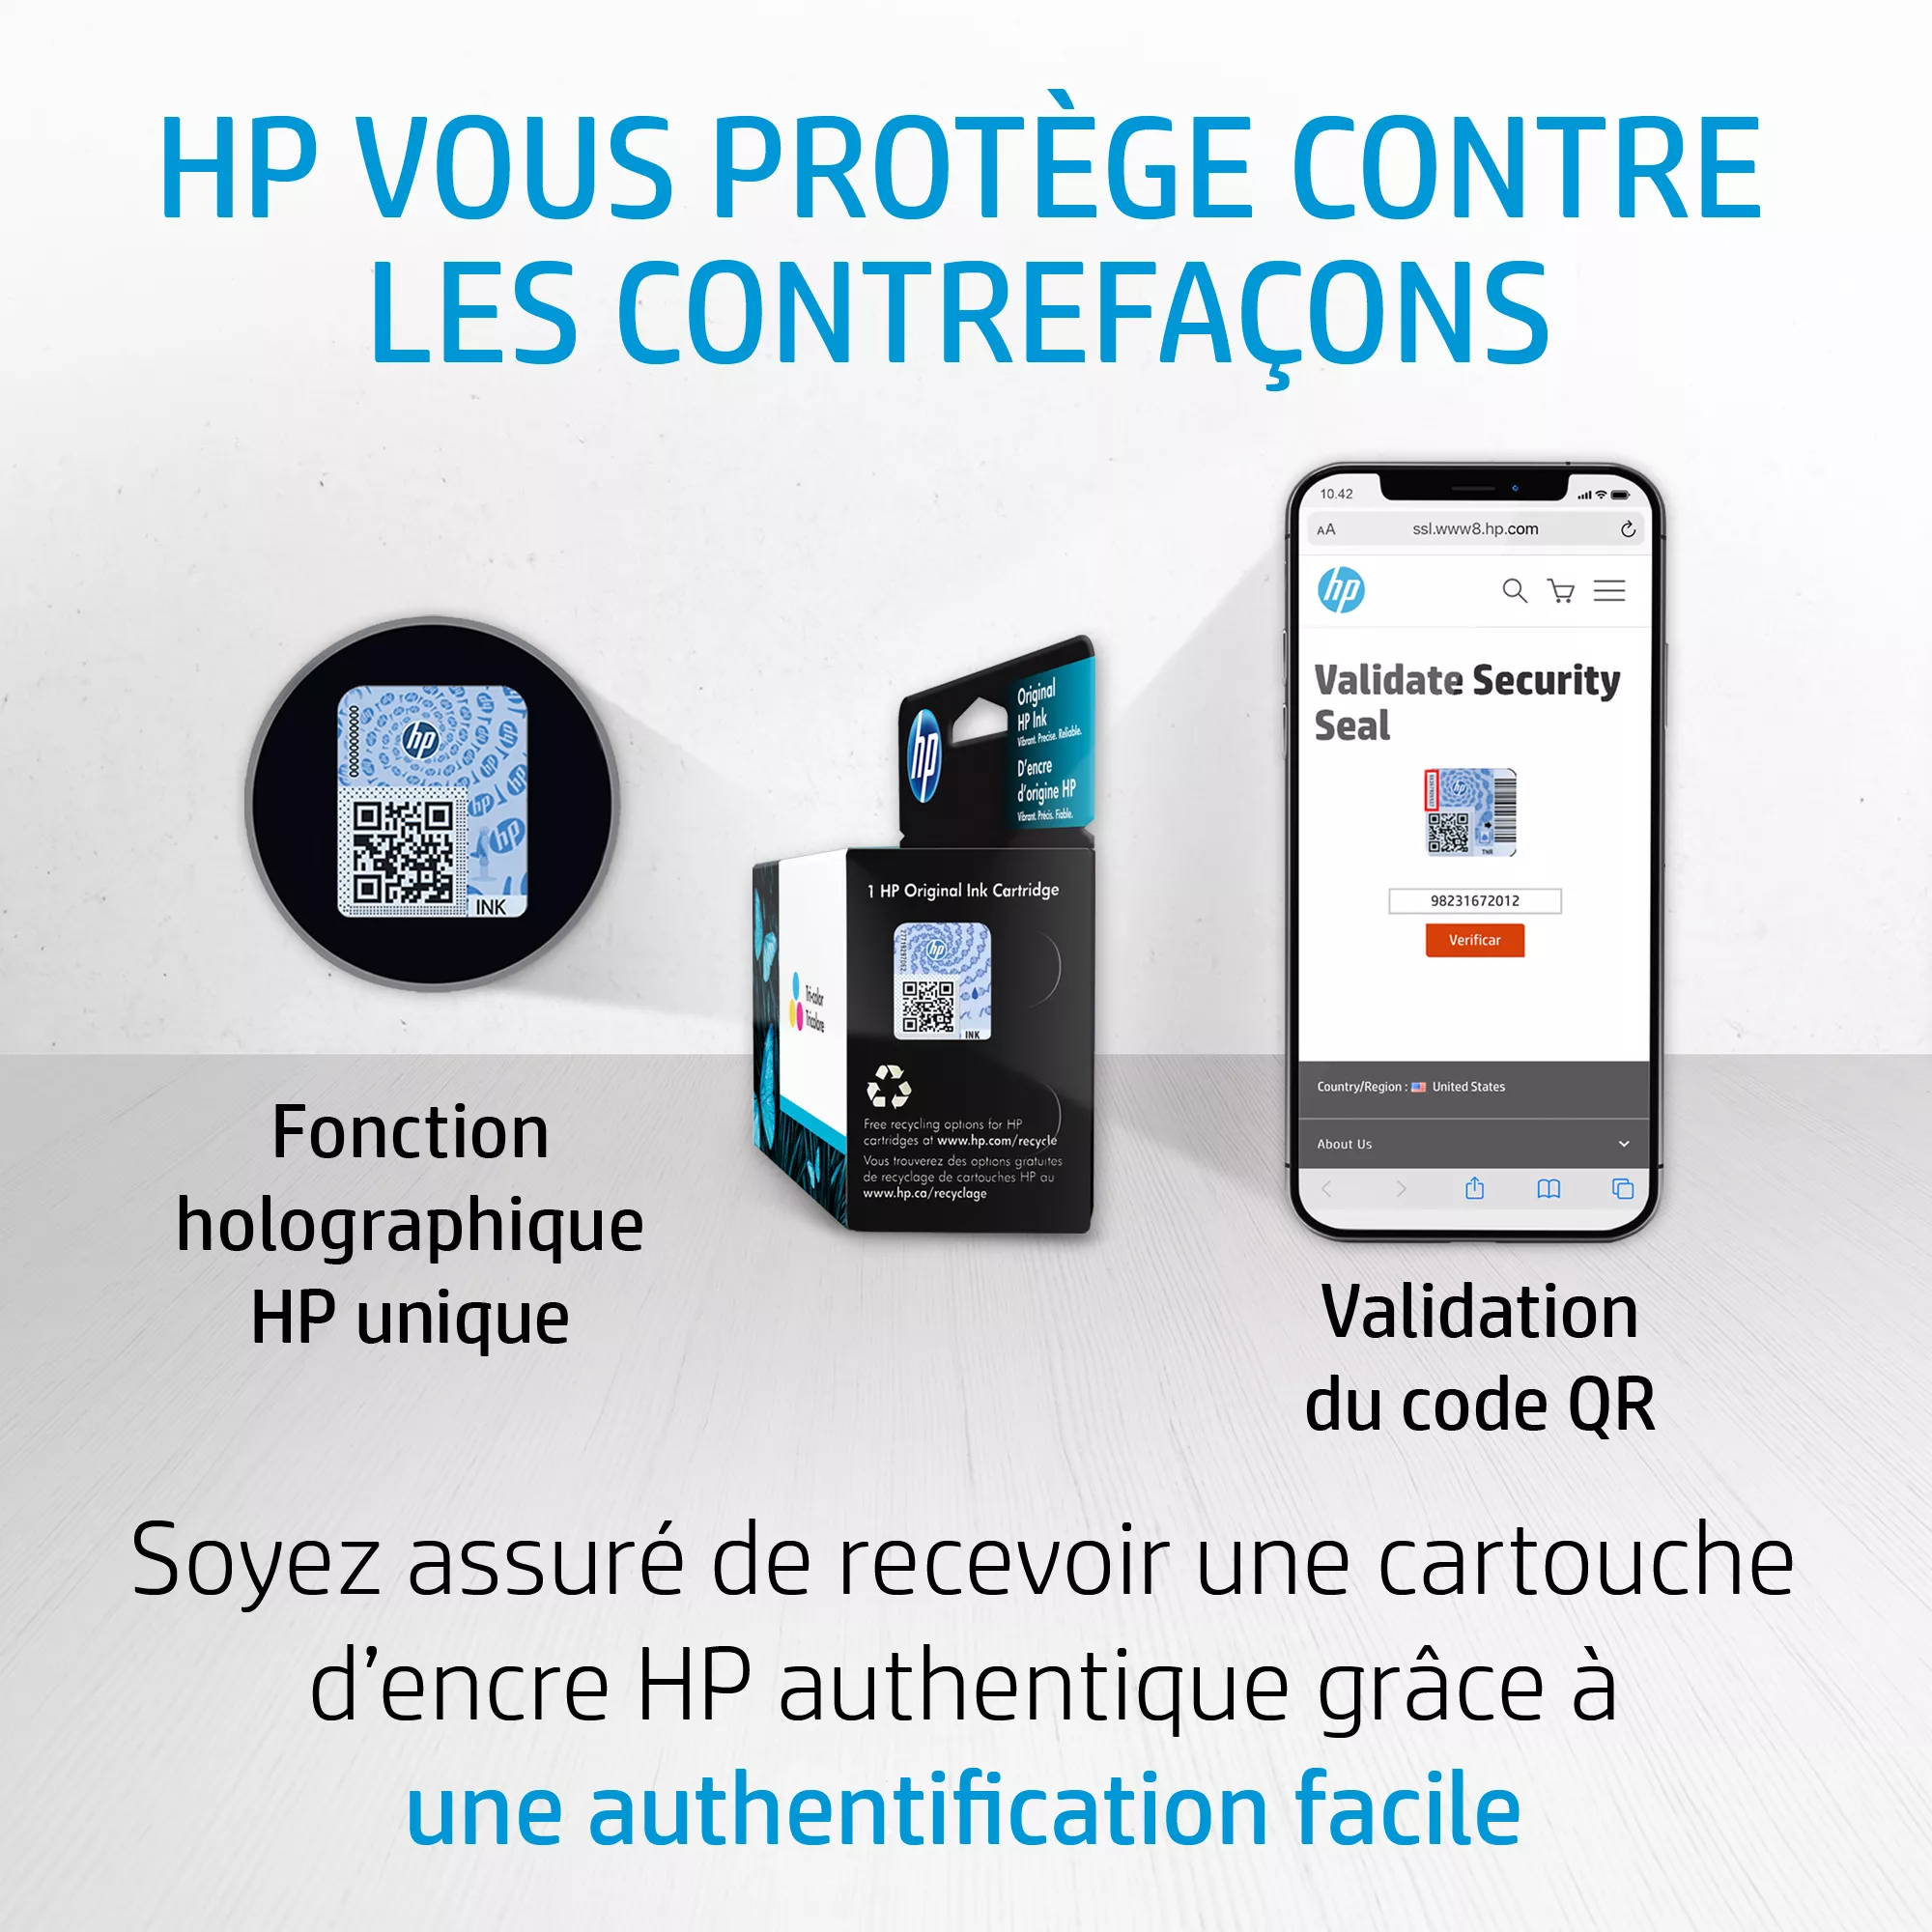 HP 303 Tri-colour Ink Cartridge HP - visuel 1 - hello RSE - Qualité d'impression HP exceptionnelle